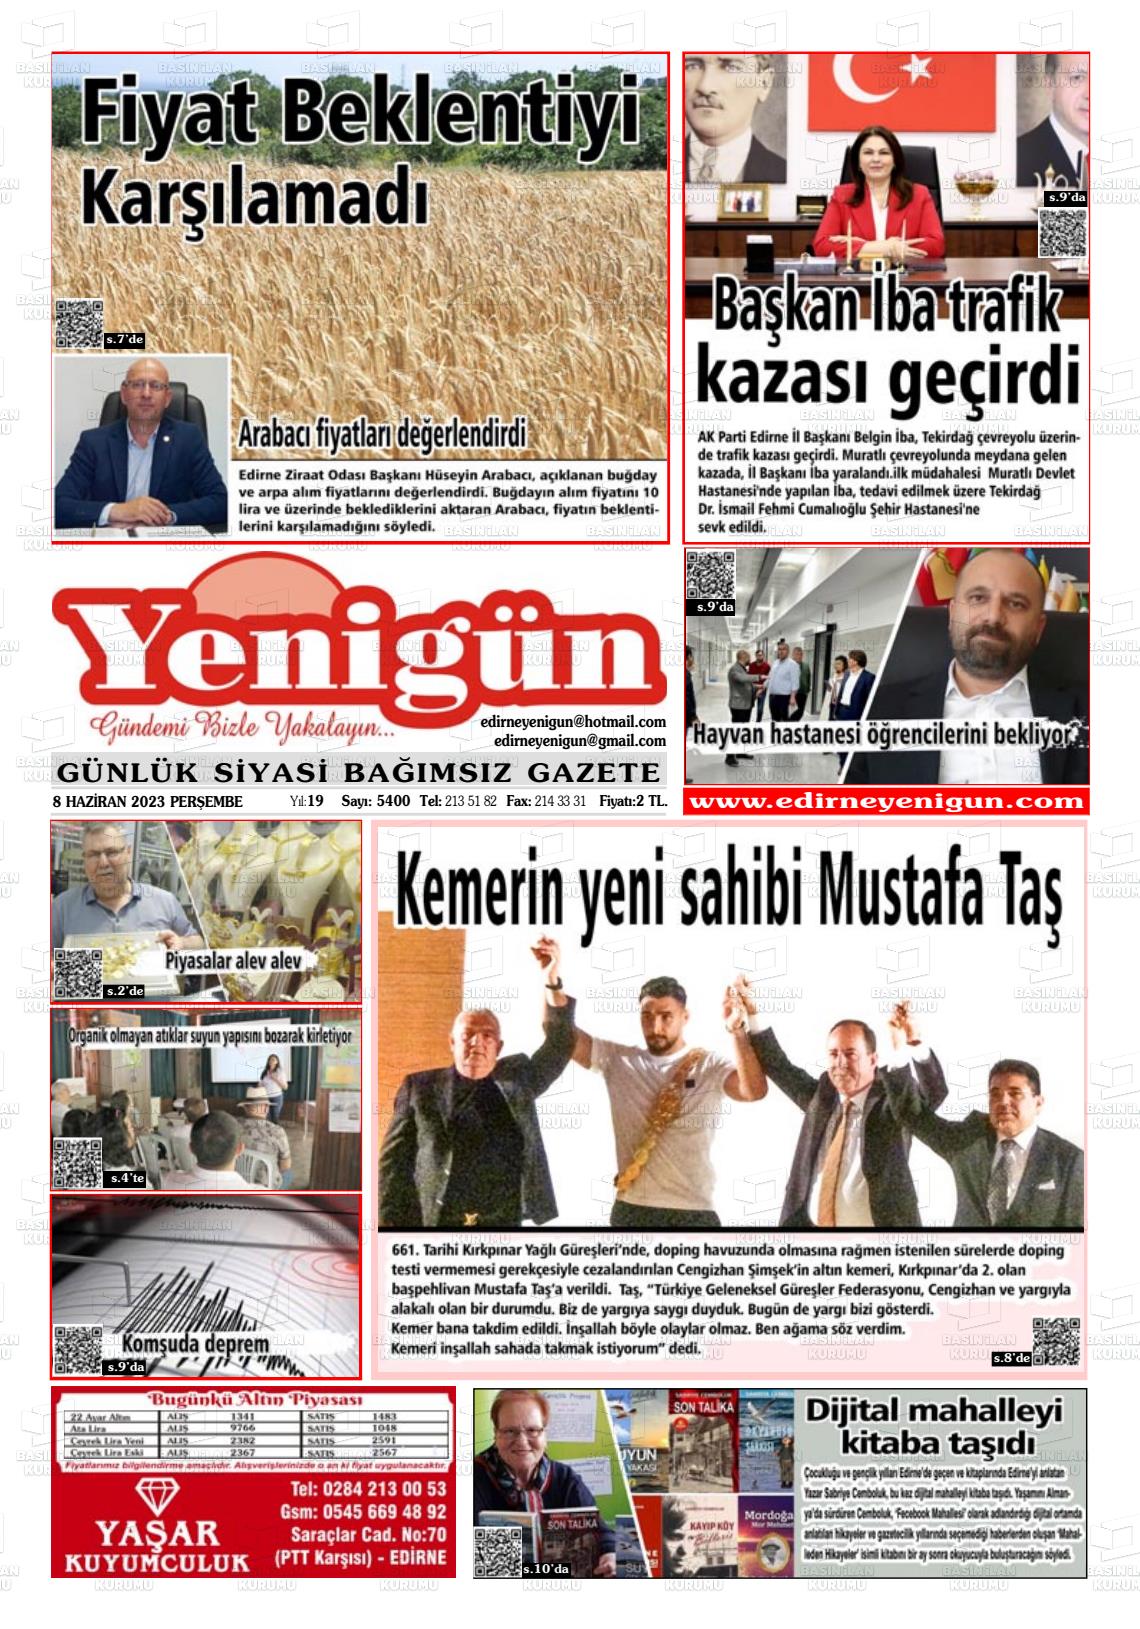 08 Haziran 2023 Edirne Yenigün Gazete Manşeti